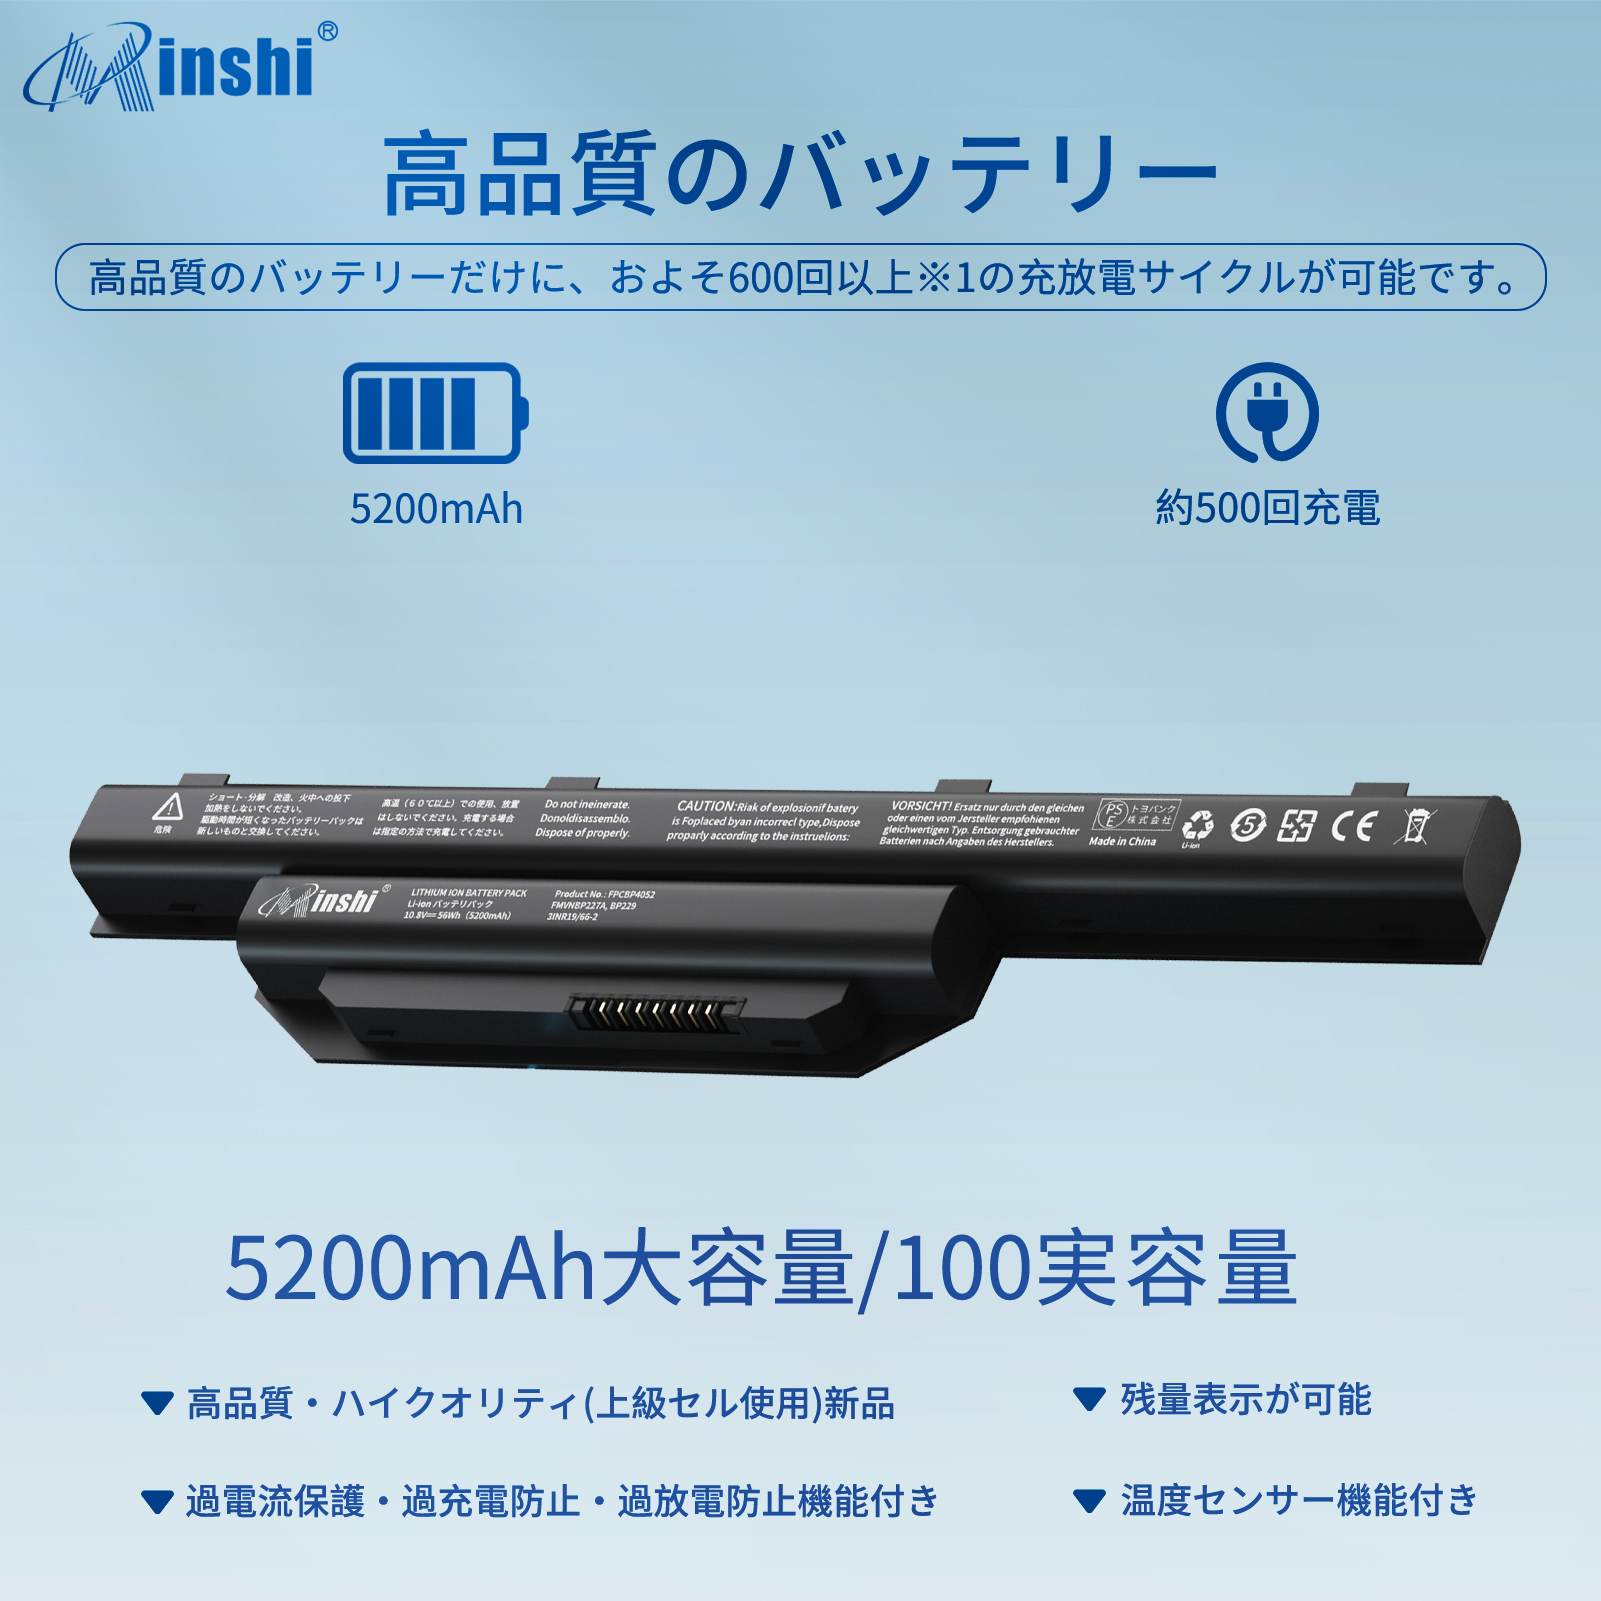 富士通 未使用 FUJITSU LIFEBOOK AH56 M、AH53 M、AH42 Mシリーズ 互換用内蔵バッテリパック FMVNBP229  FMVNBP229A FMVNBP227 minshi